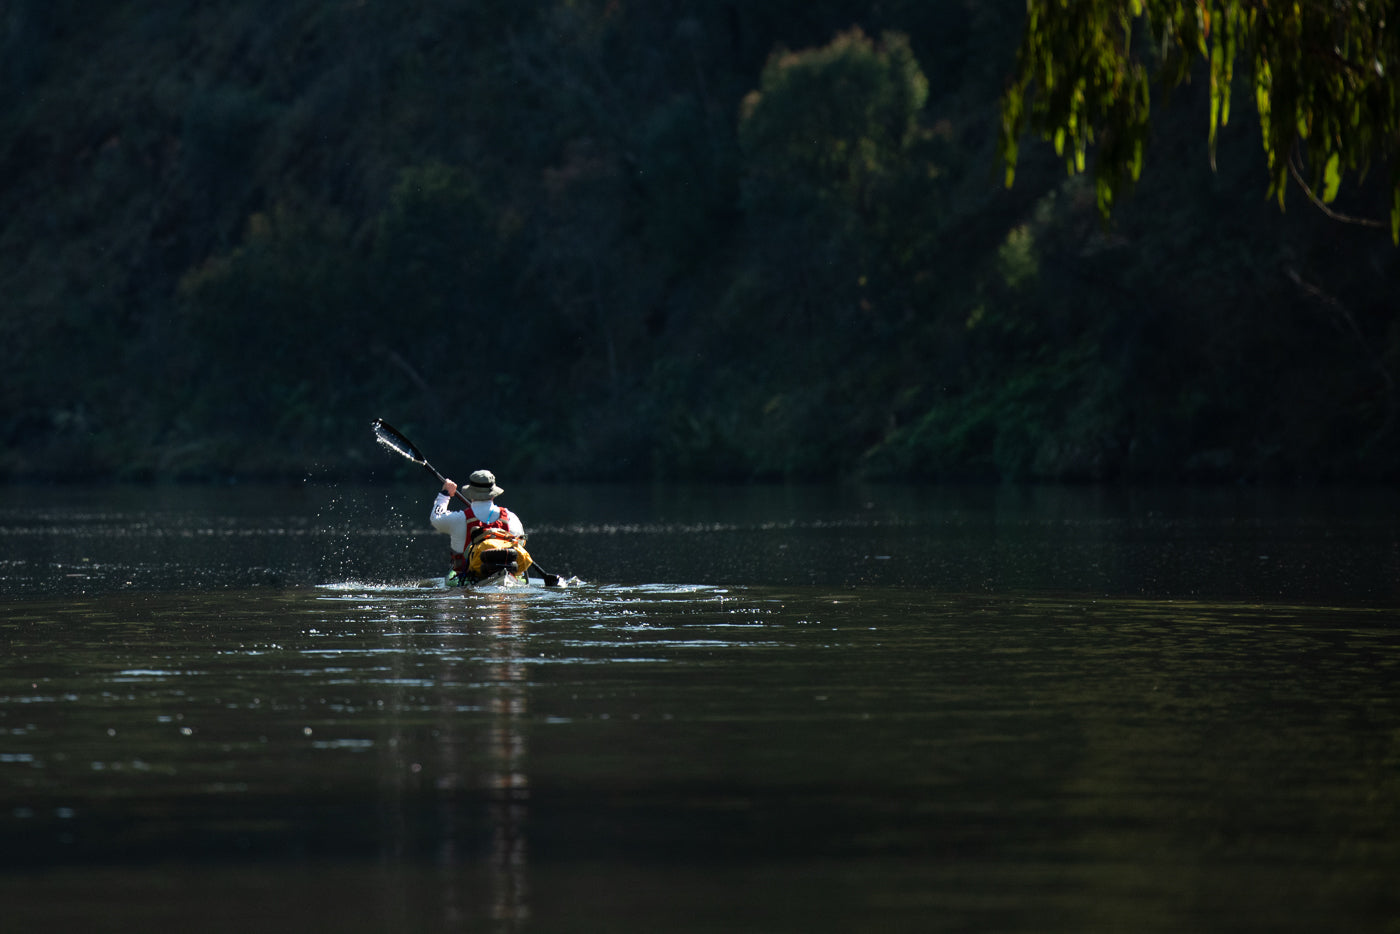 Phil kayaking on Talbingo Dam